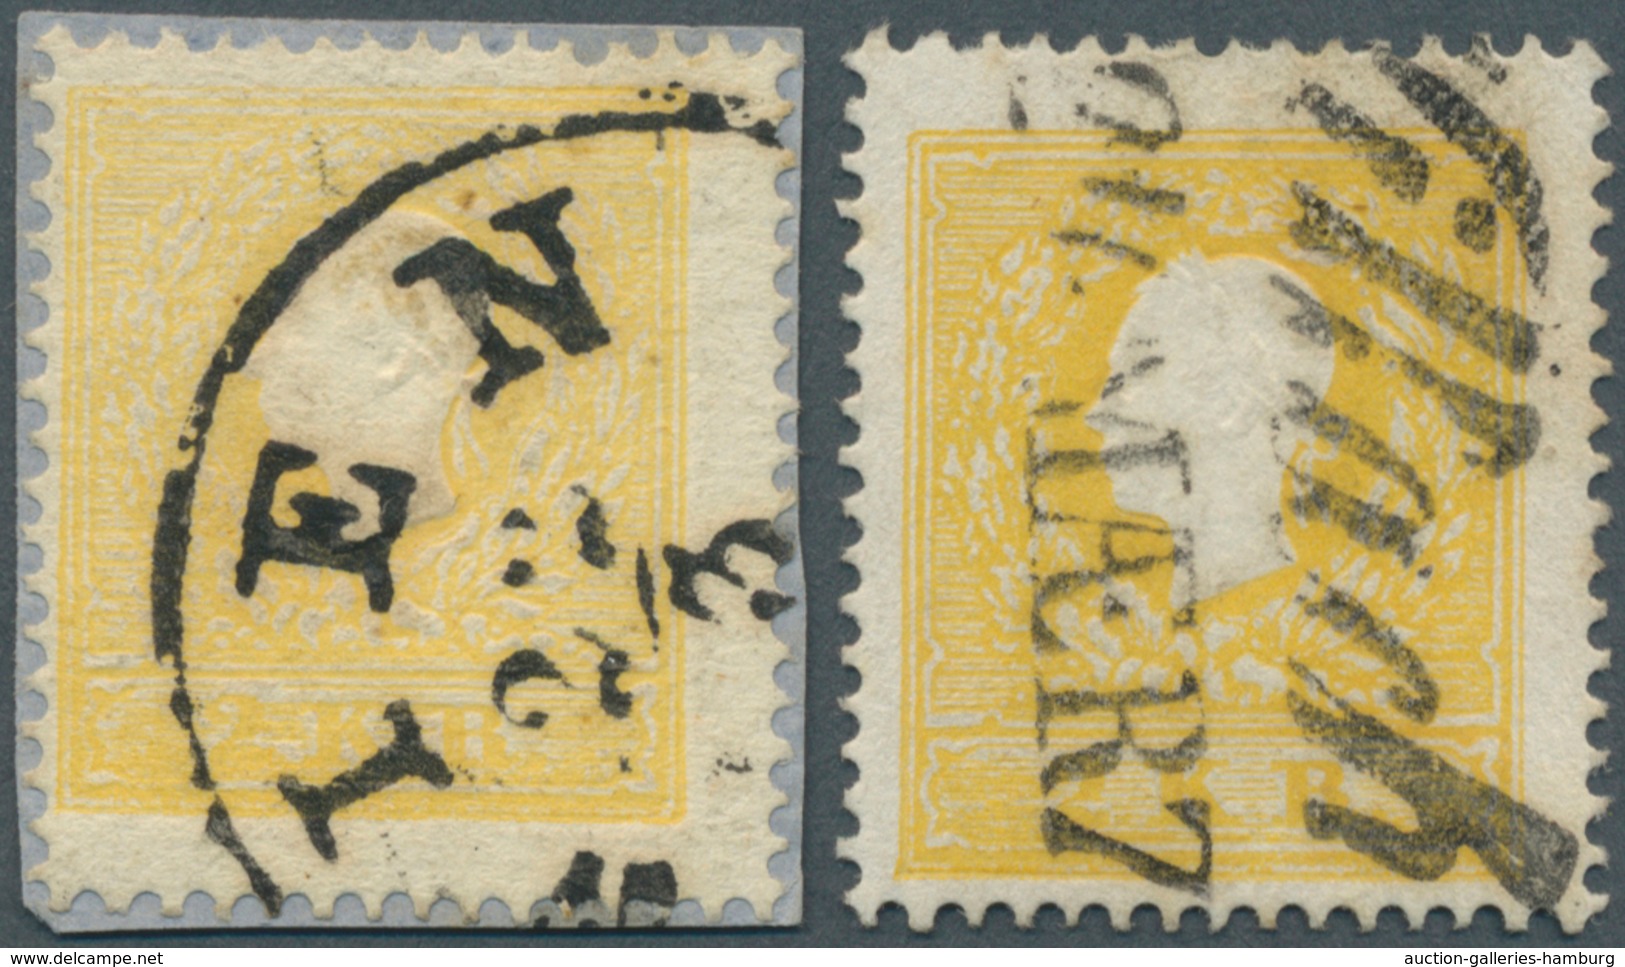 Österreich: 1858, 2 Kr Gelb, Type I Auf Briefstück Mit Teilstempel Wien Sowie 2 Kr Dunkelgelb, Type - Unused Stamps